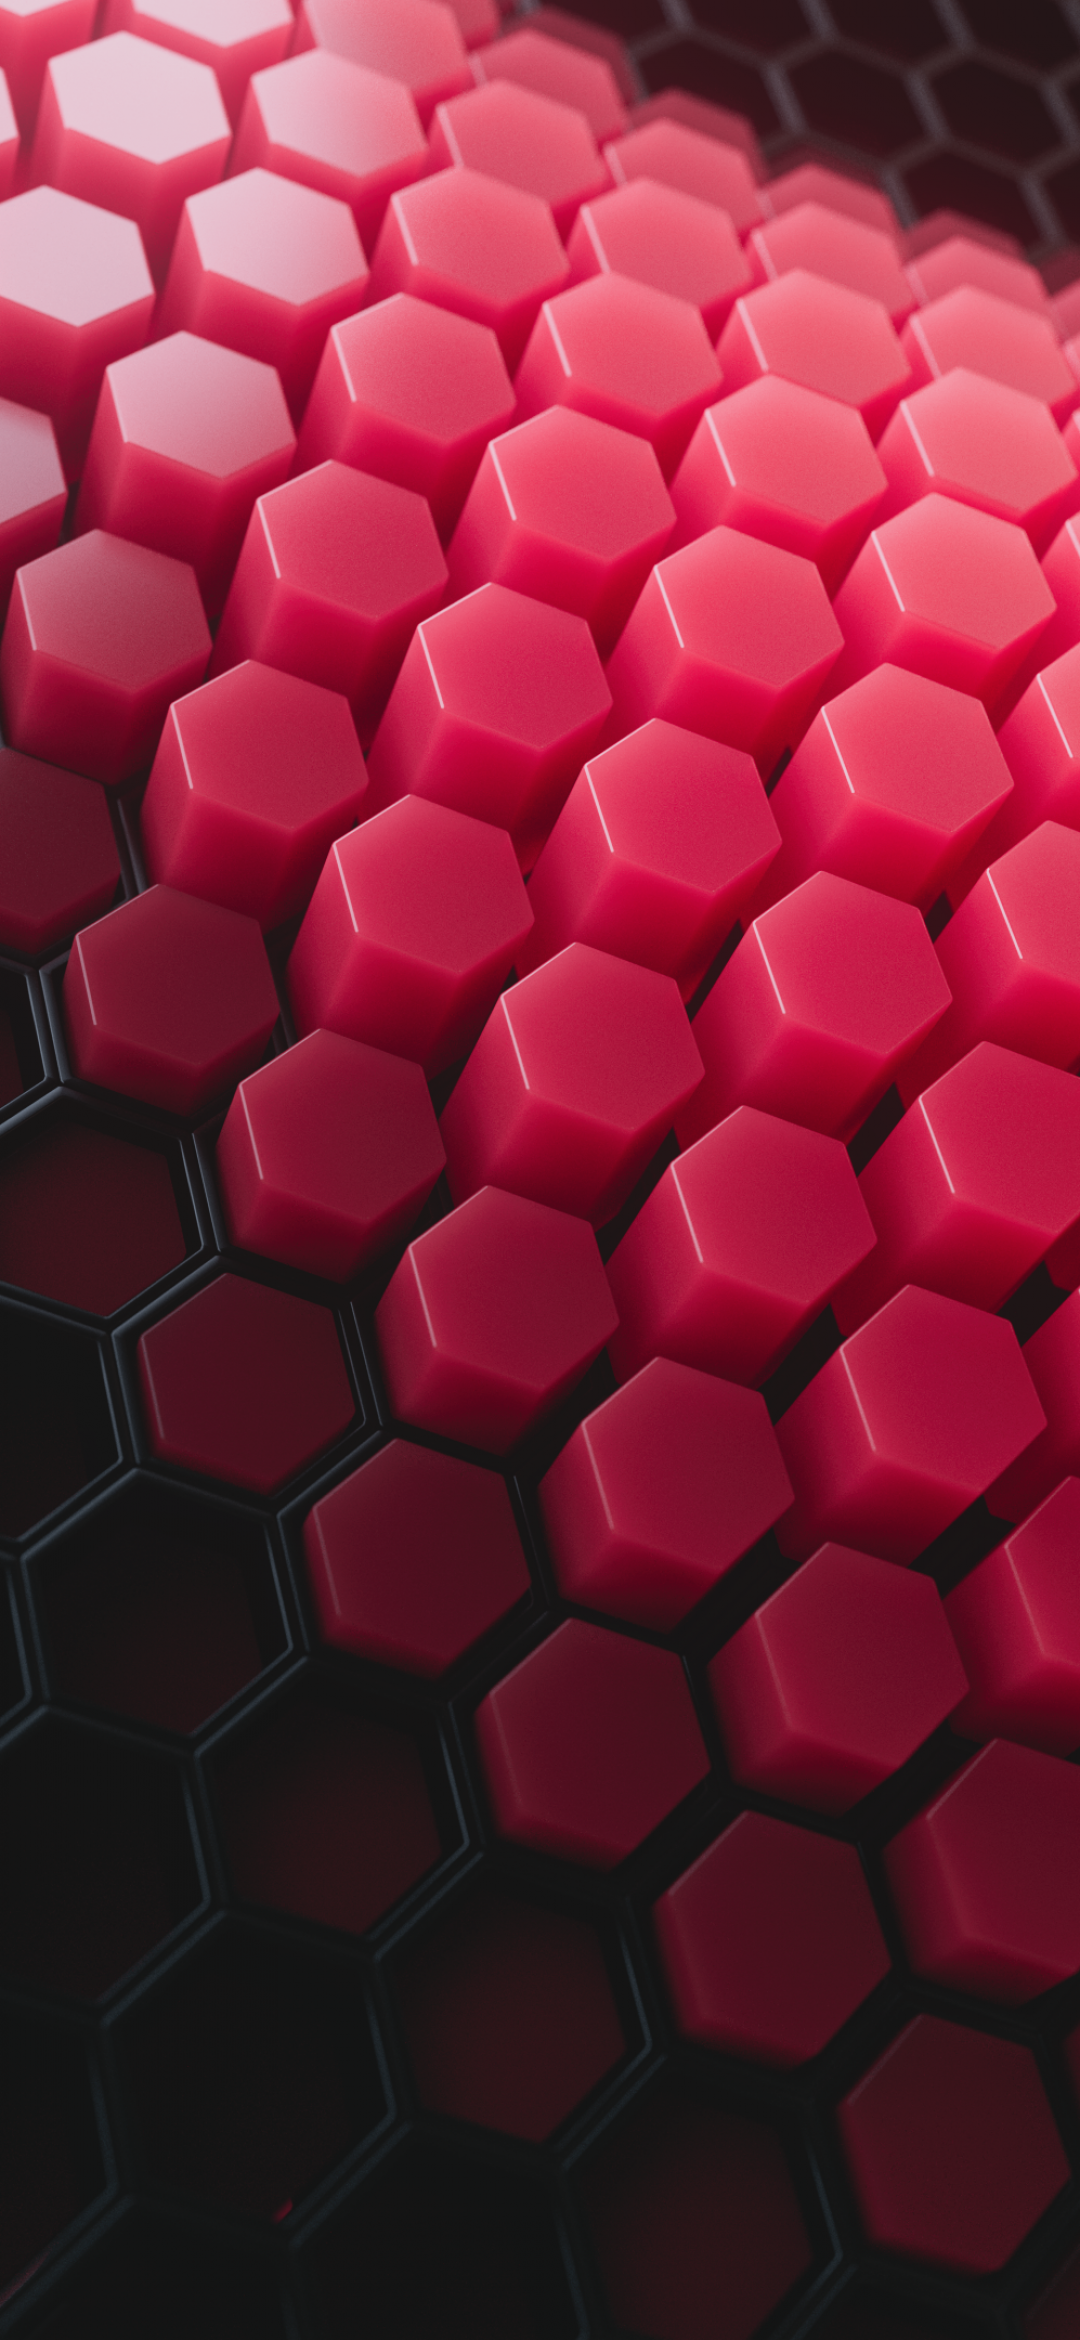 Hexagon - hình dạng đa giác được yêu thích bởi sự tinh tế và khả năng tạo nên những kết cấu độc đáo. Nếu bạn cần một hình nền tốt nhất để thể hiện sự tinh tế của mình, xin mời vào xem hình ảnh tuyệt đẹp này!